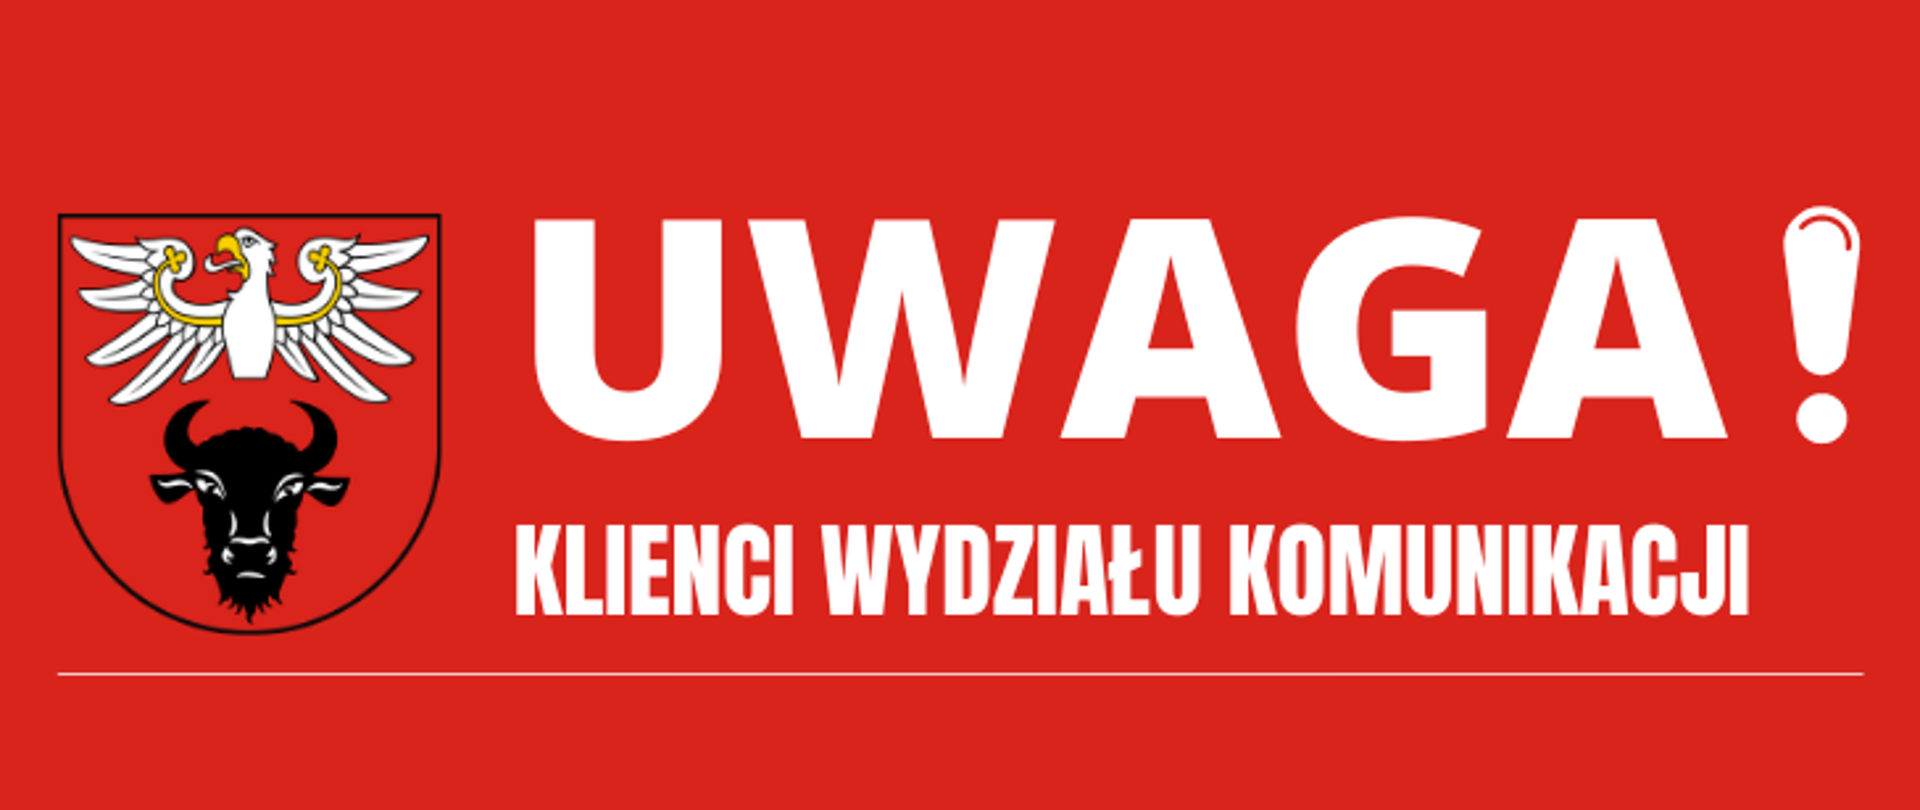 na zdjęciu na czerwonym tle z lewej strony znajduje się logo powiatu zambrowskiego oraz napis "UWAGA! KLIENCI WYDZIAŁU KOMUNIKACJI"